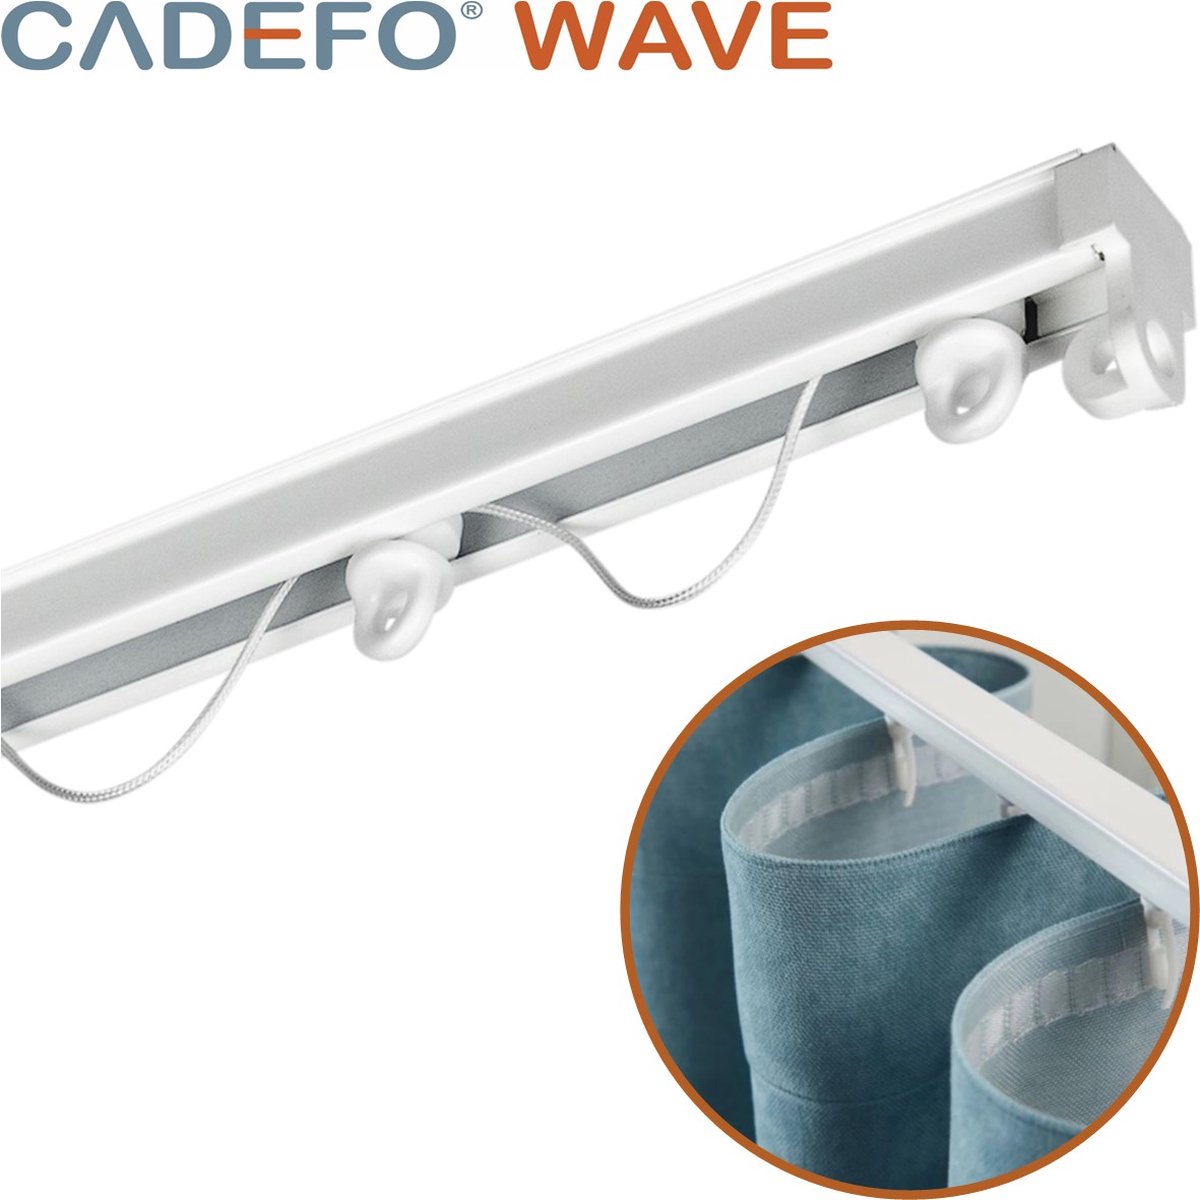 CADEFO WAVE (301 - 350 cm) Gordijnrails - Compleet op maat! - UIT 1 STUK - Leverbaar tot 6 meter - Plafondbevestiging - Lengte 331 cm